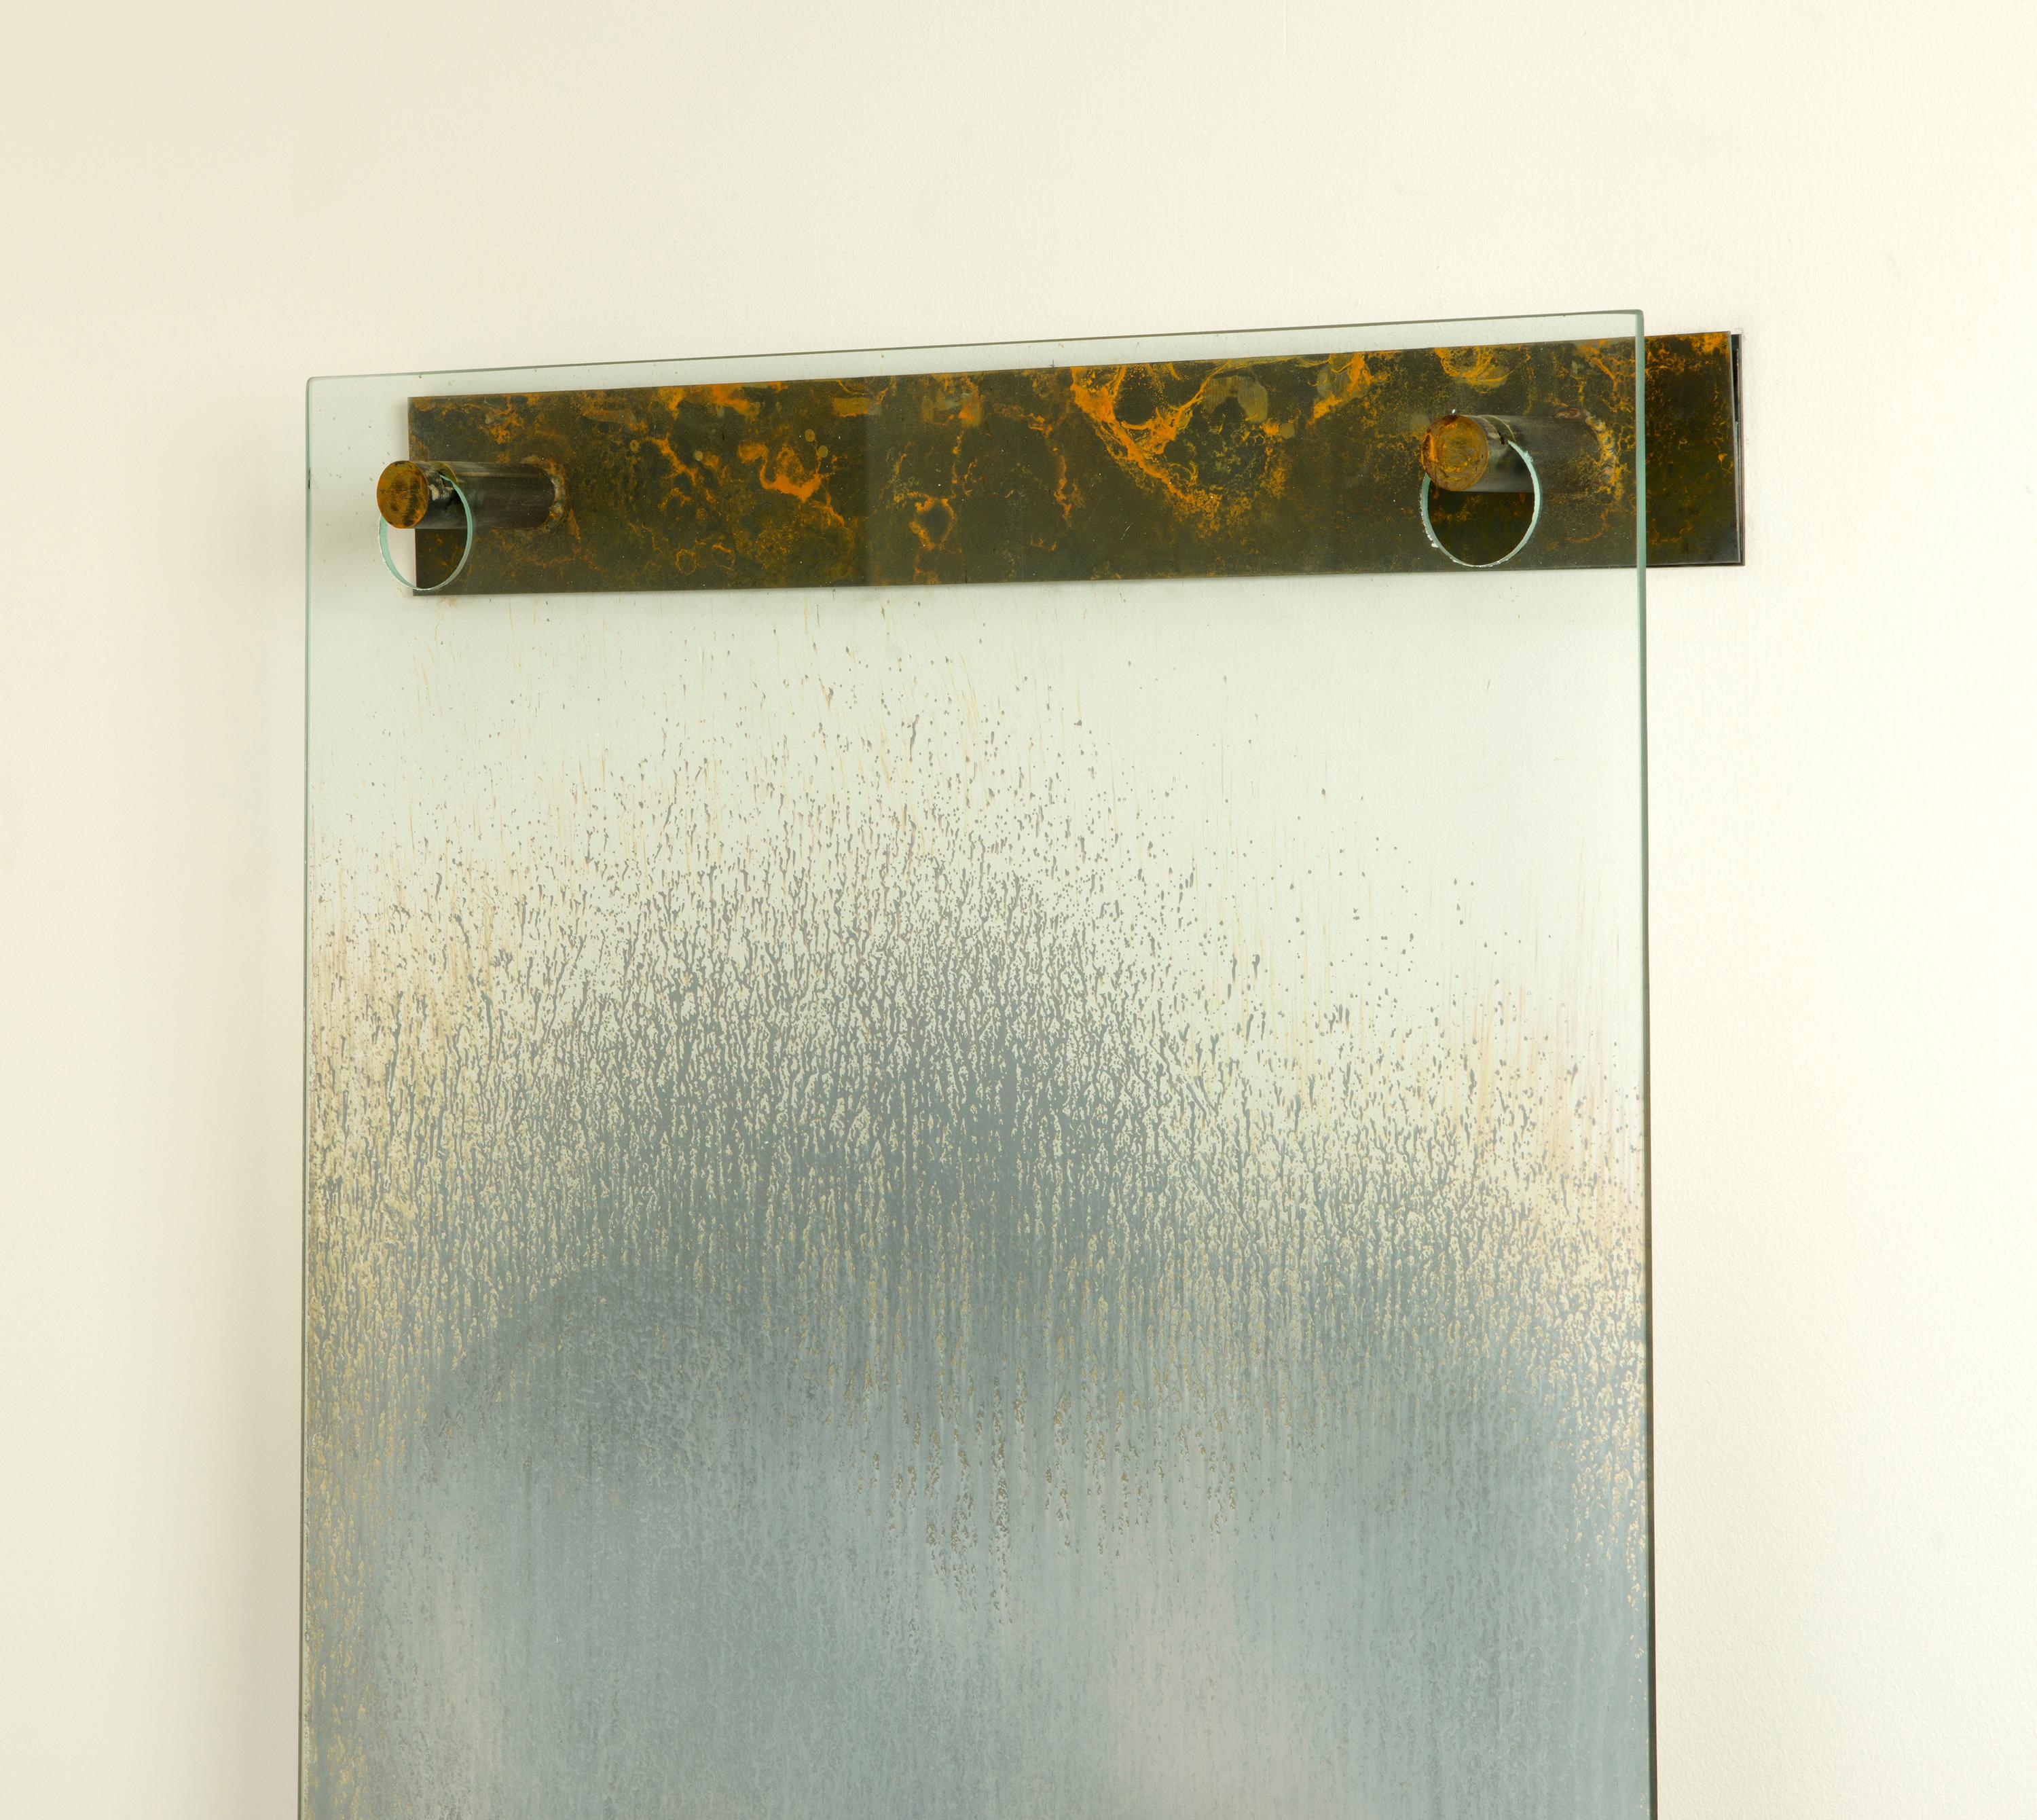 Spiegel für Cy Twombly
Gregory Nangle, 2016
Versilbertes Glas, Bronzebügel mit Kalium-Tabak-Schmelzpatina
84 x 30 x 4,5 Zoll

Aufgrund der einzigartigen Variationen des kreativen Prozesses ist jedes Stück ein Unikat. 